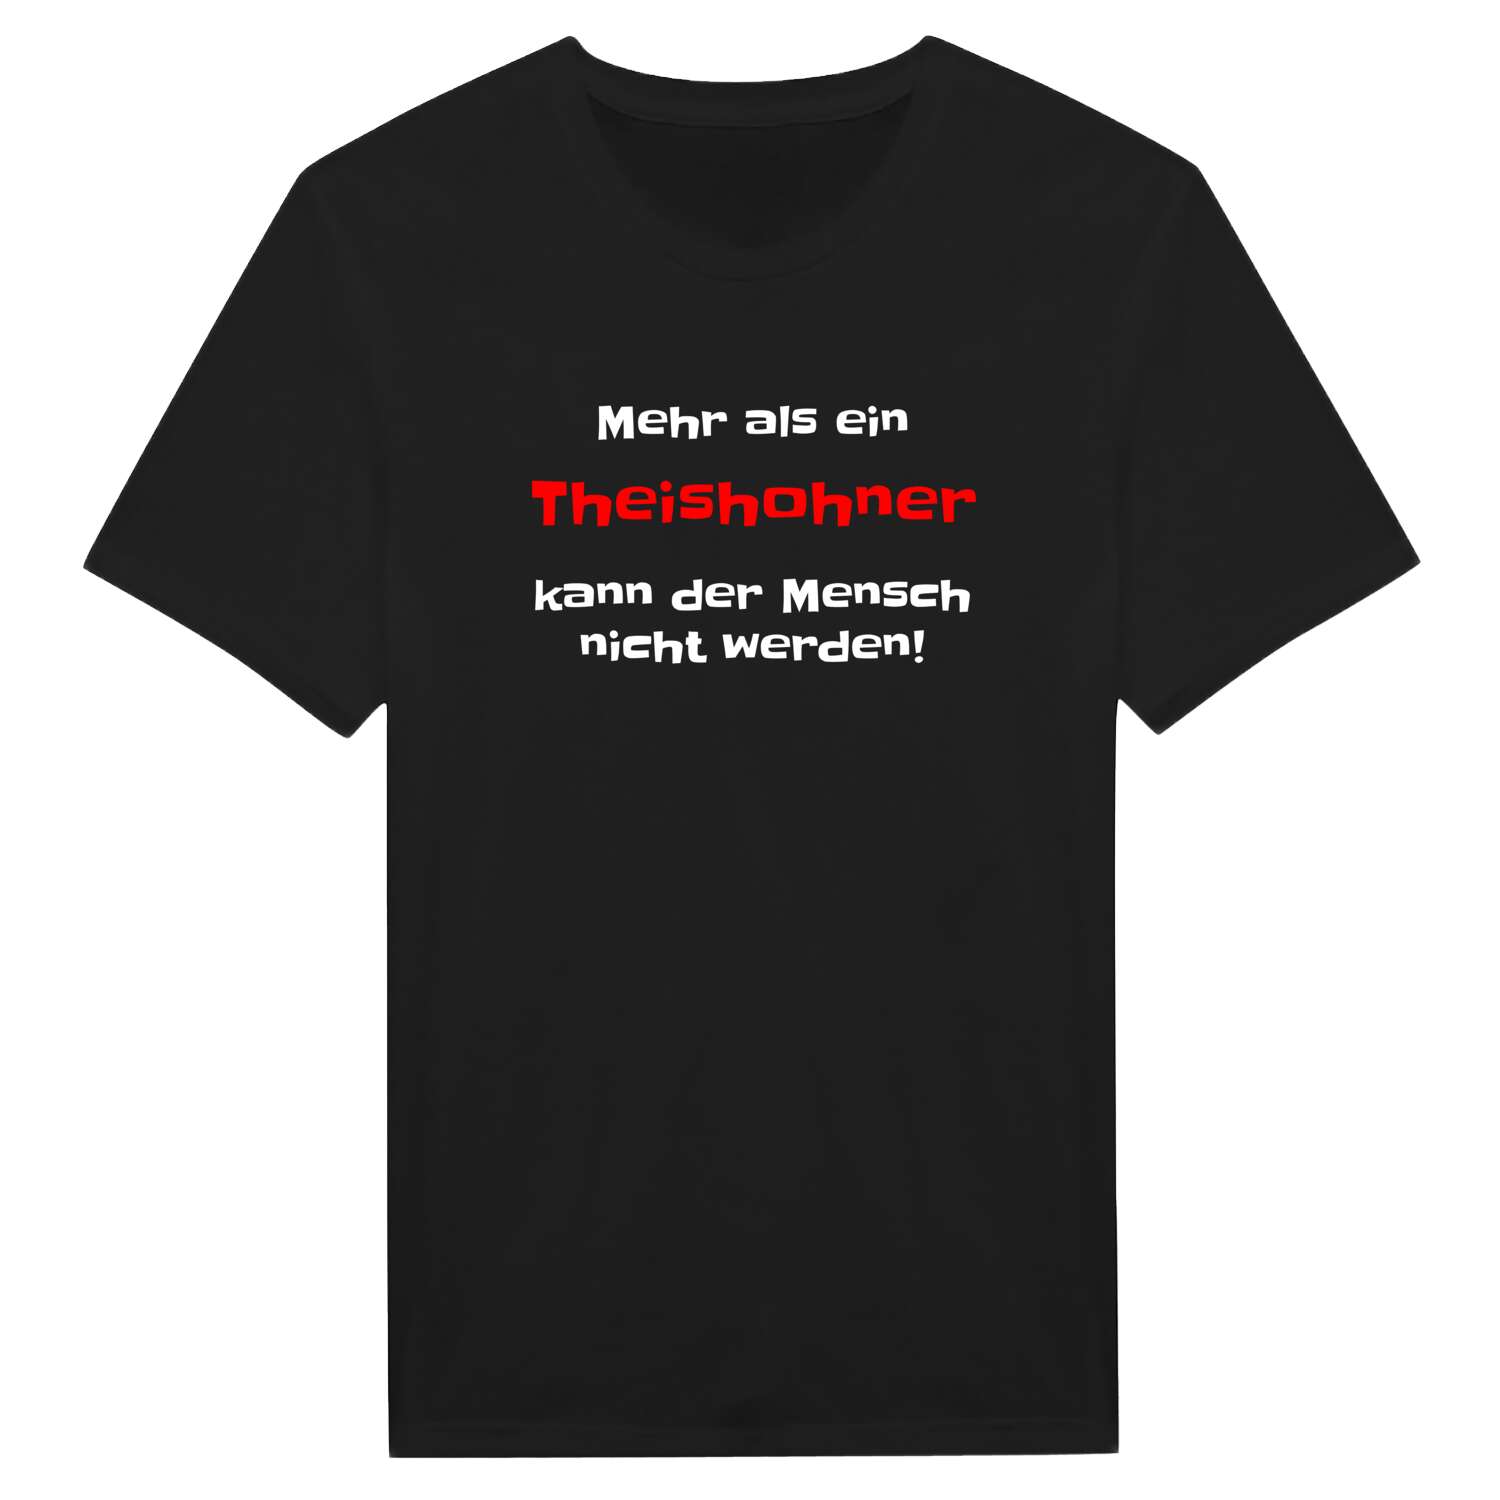 Theishohn T-Shirt »Mehr als ein«